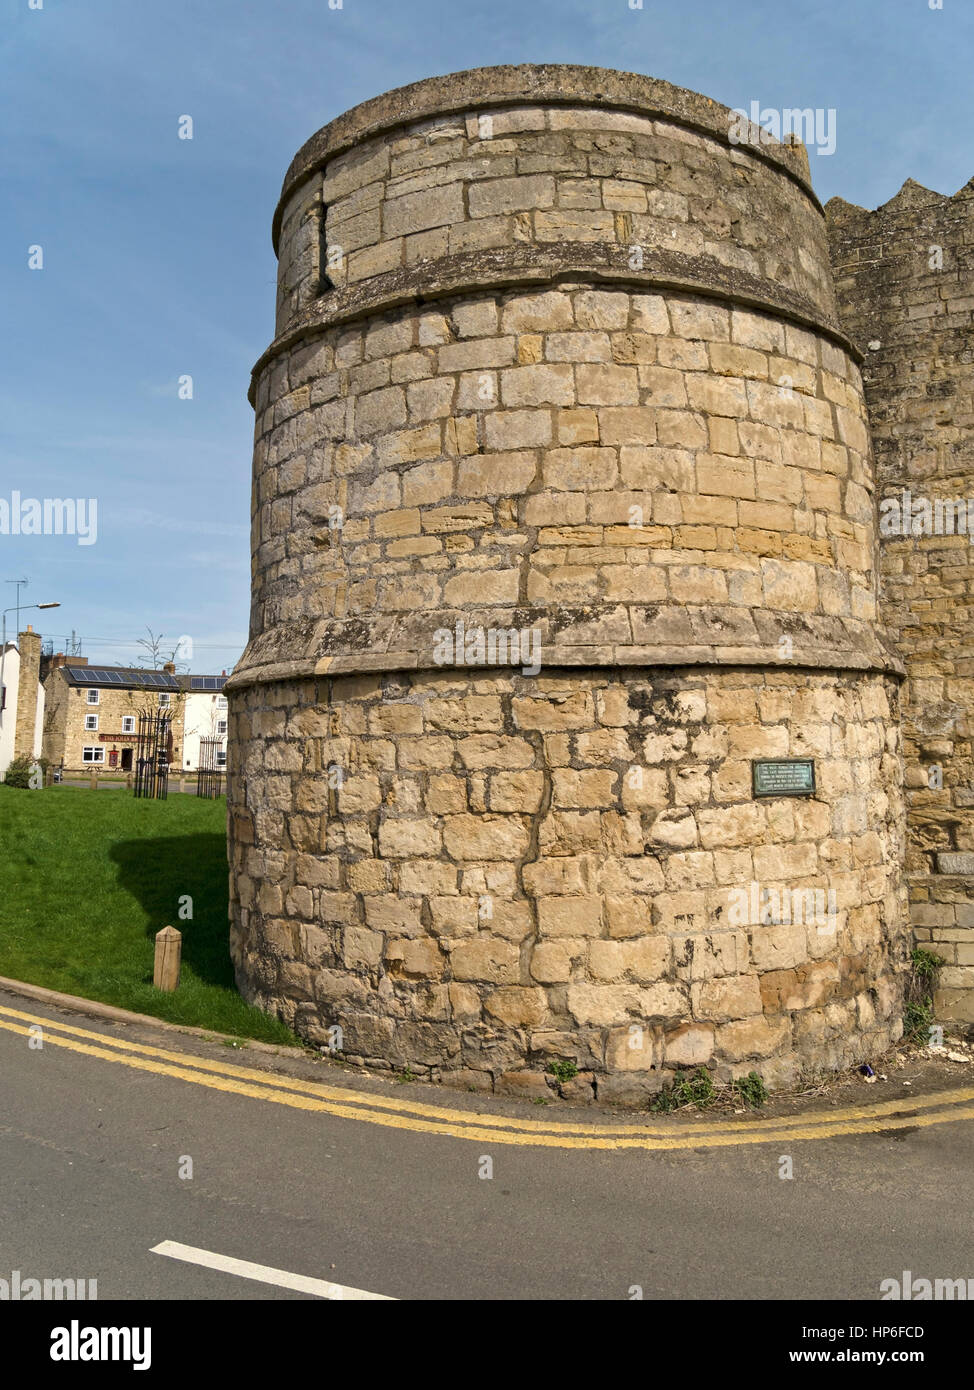 La seule ville de pierre mur tour bastion, St Peter's Gate, Stamford, Lincolnshire, Angleterre, RU Banque D'Images